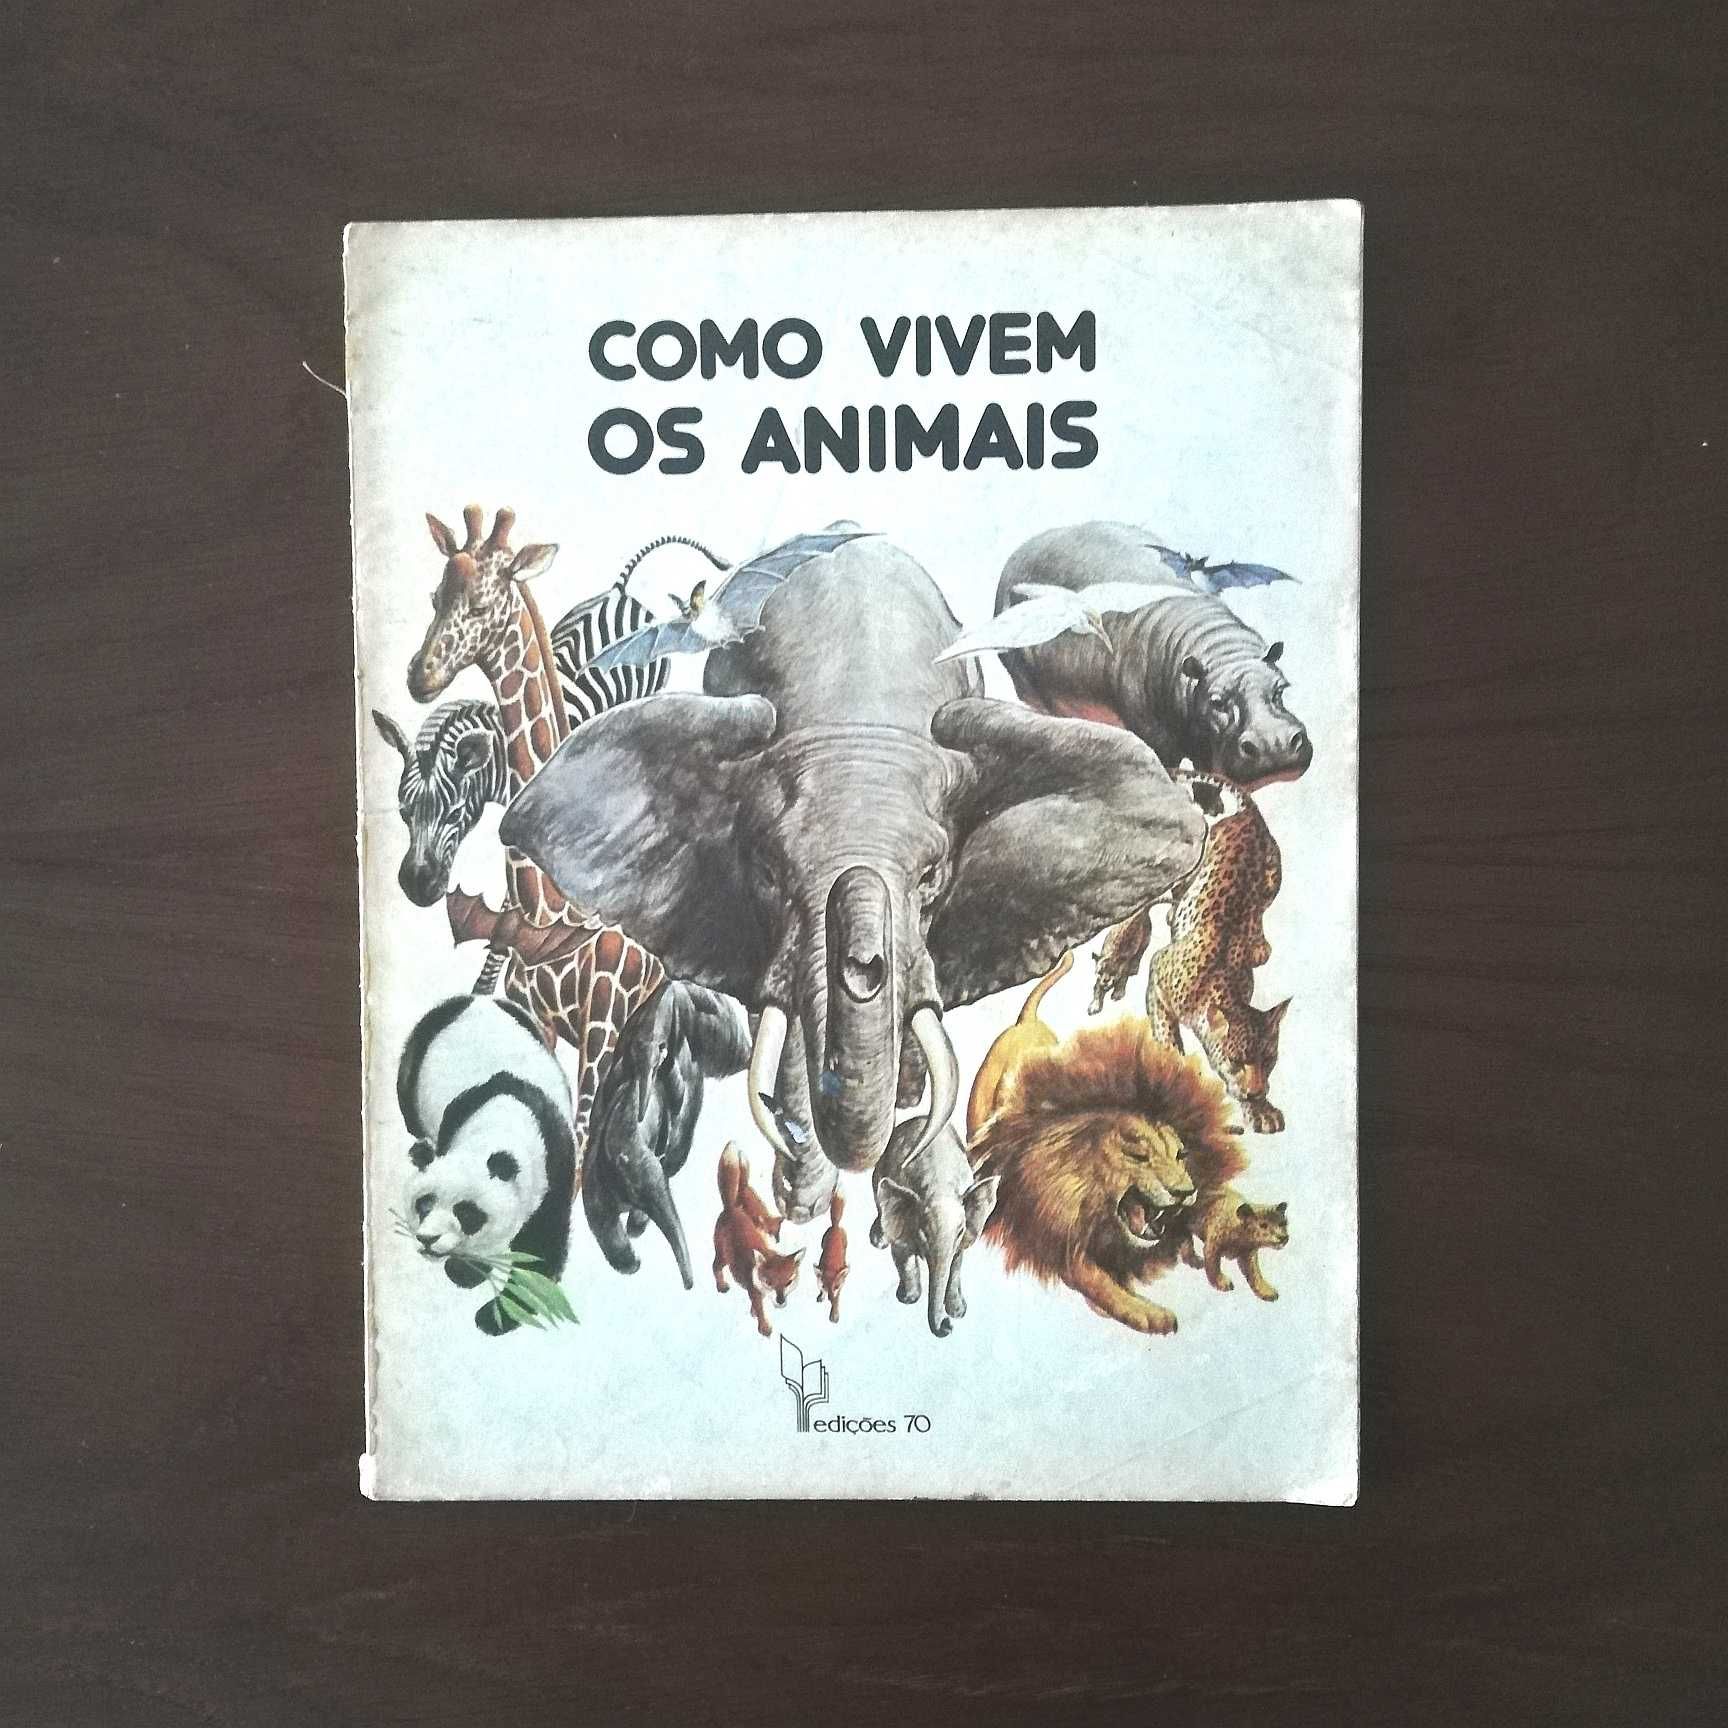 "Como vivem os animais", 1976